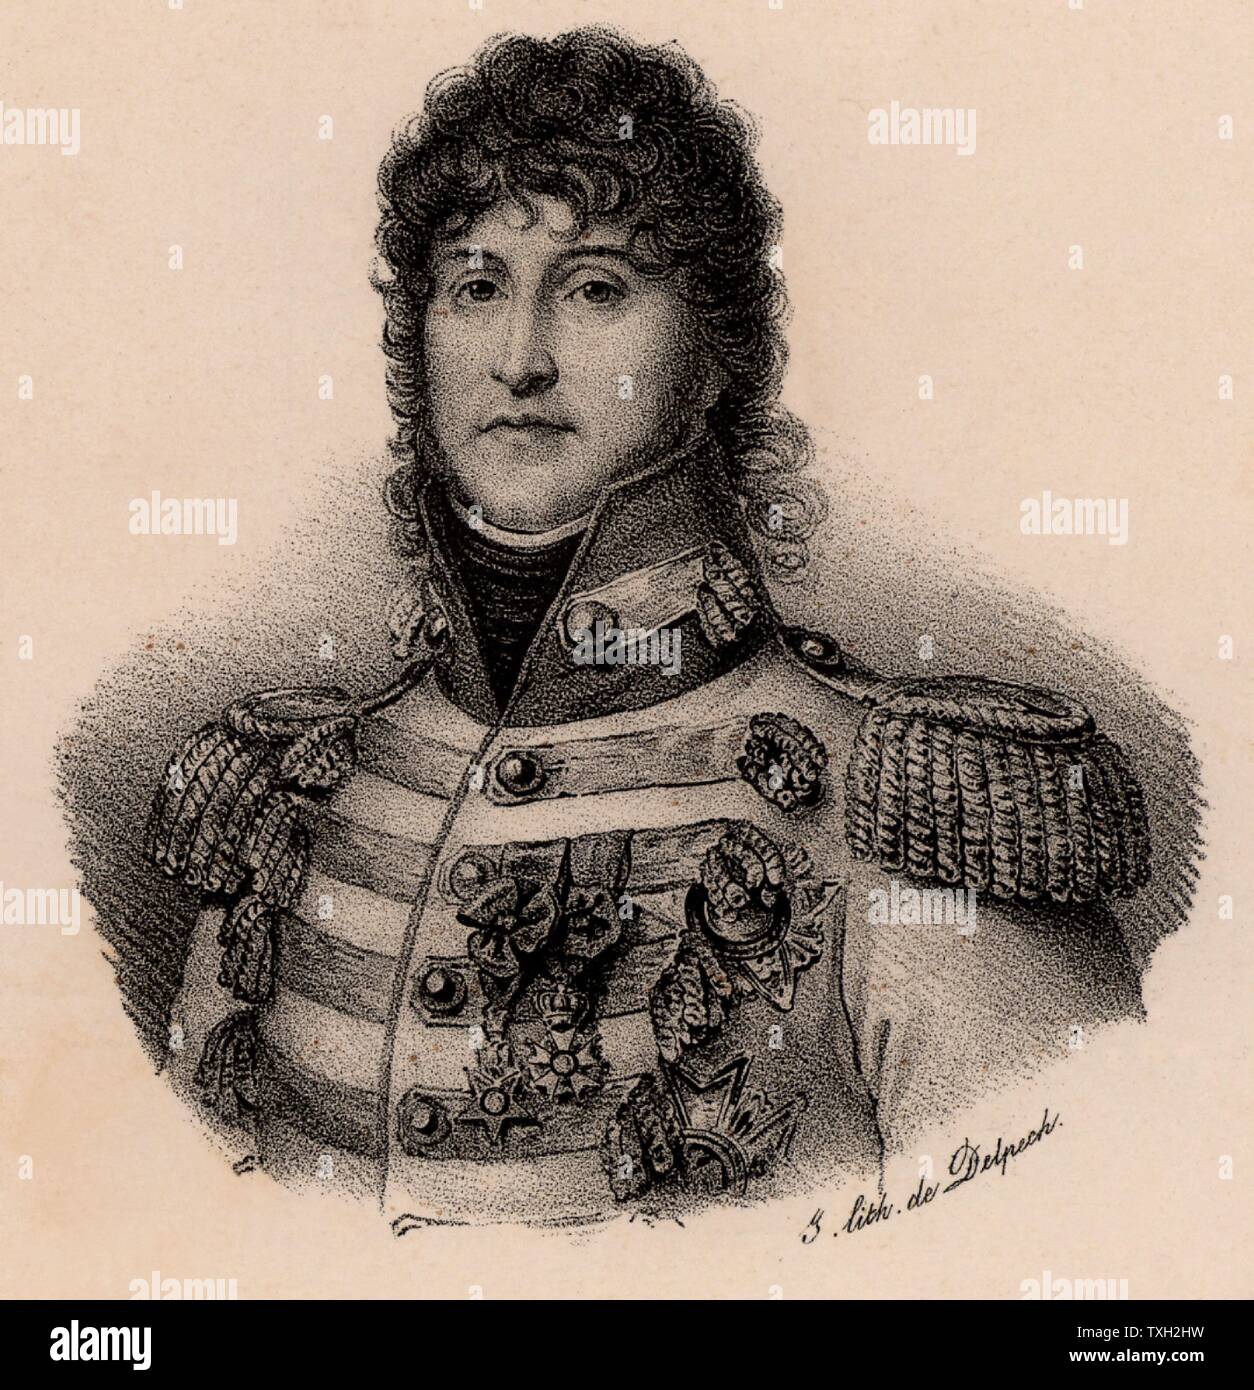 Joachim Murat (1767-1815) soldat français. Créé roi de Naples en 1808. Il a épousé la sœur de Napoléon Bonaparte Caroline. Il a contribué à la victoire de Marengo, Austerlitz, Iéna et Eylau. Après la défaite finale de Napoléon, il a été traduit en cour martiale et fusillé. Lithographie c1830. Banque D'Images